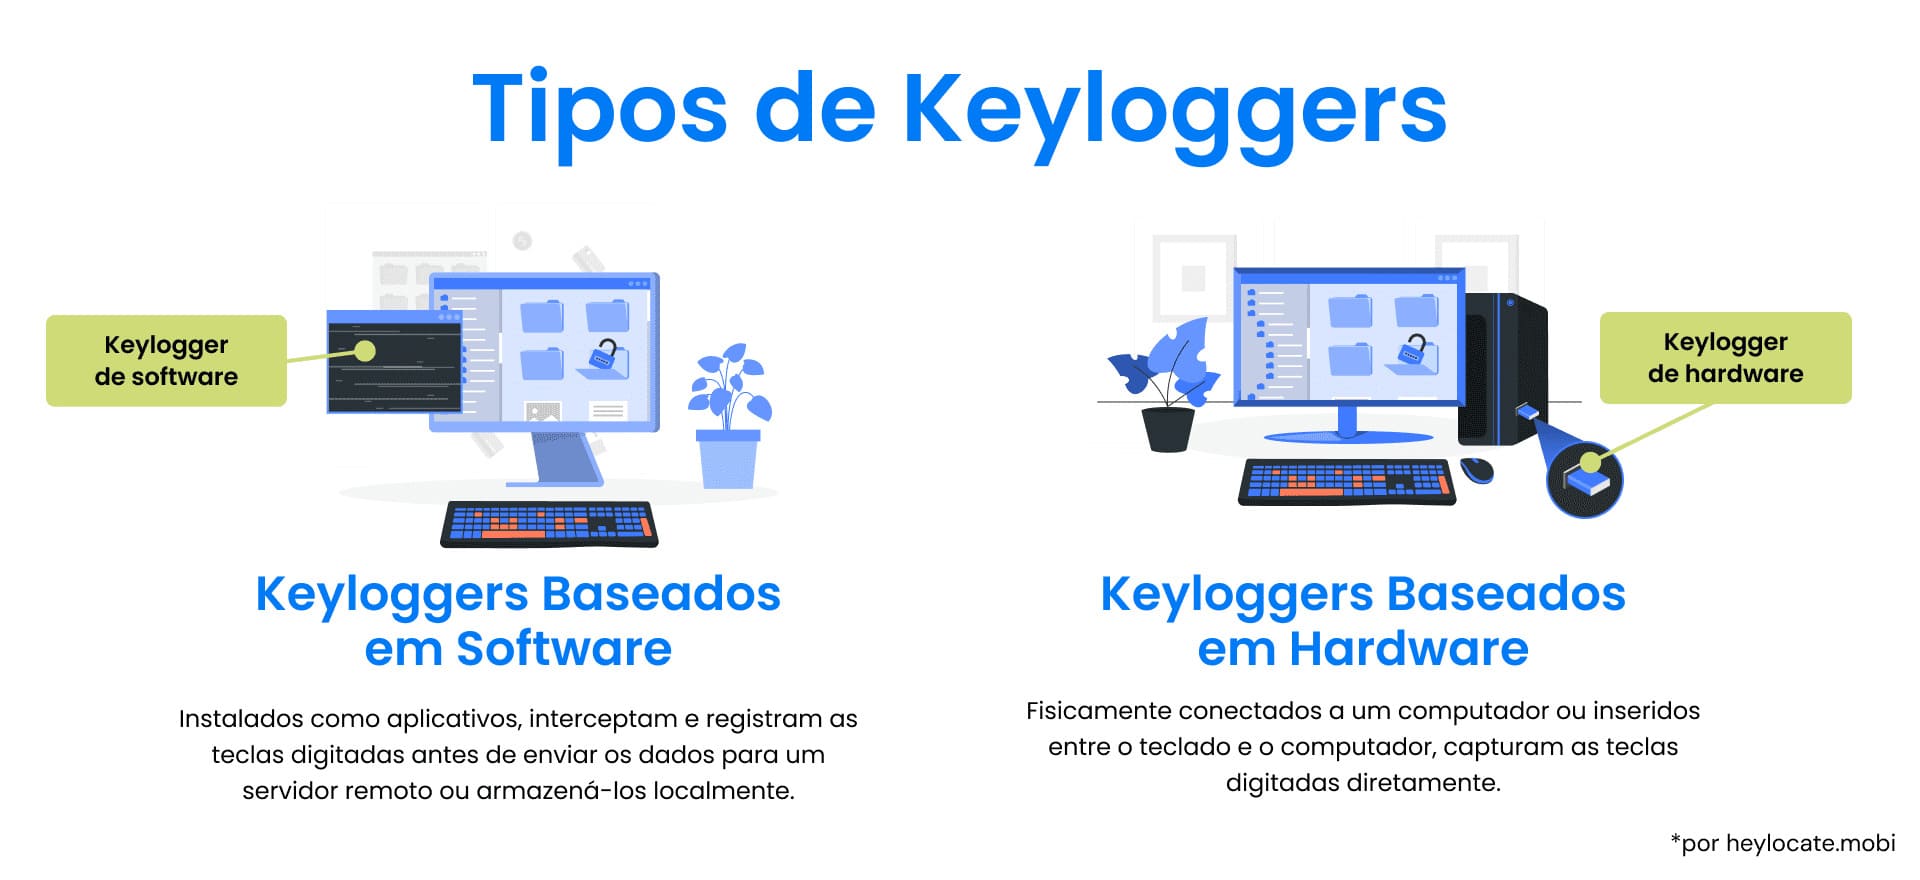 Comparação ilustrada entre keyloggers baseados em software e keyloggers baseados em hardware, mostrando seus modos de operação